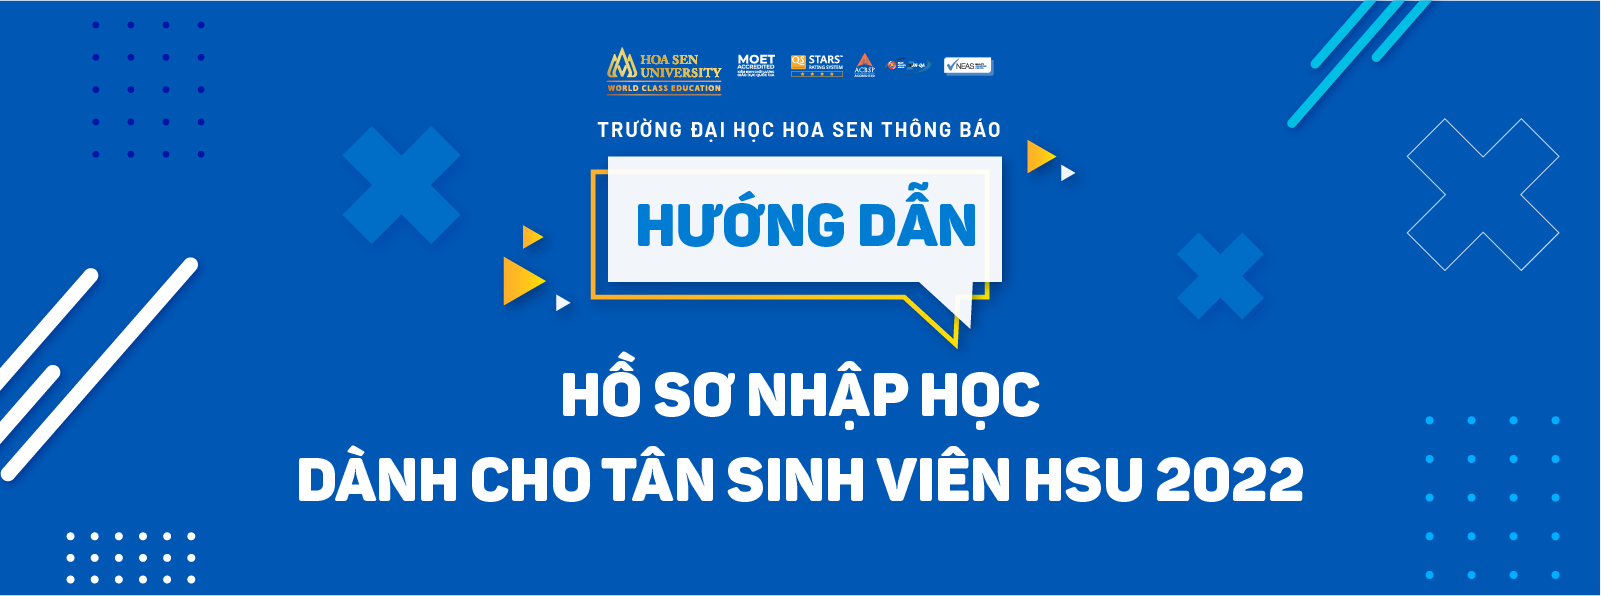 Huong dan ho so nhap hoc